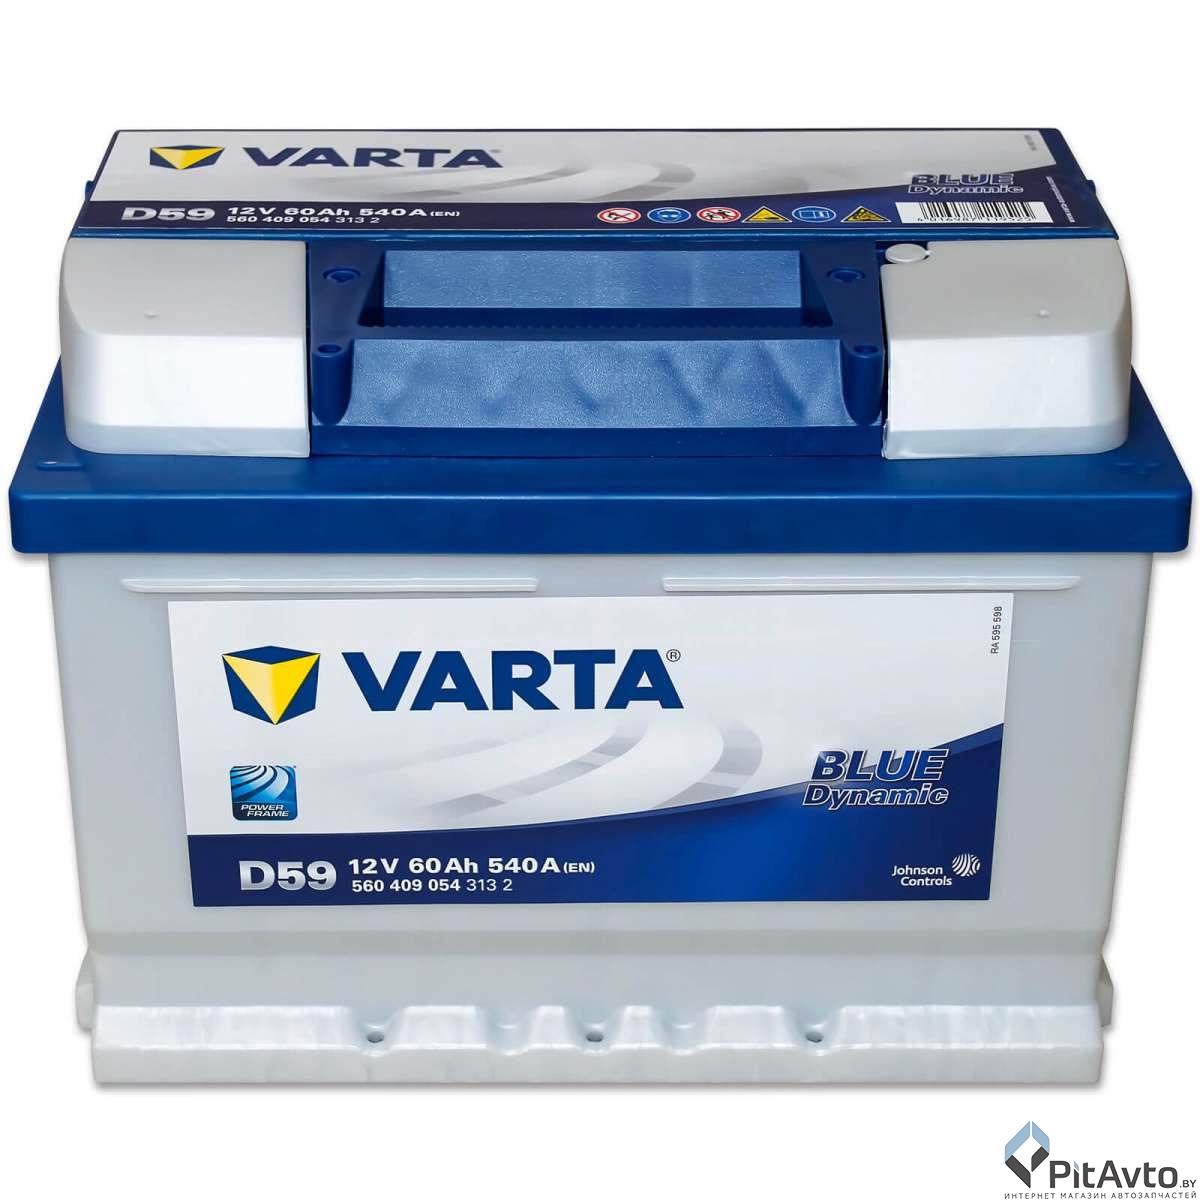 Varta Blue Dynamic 60 А/ч 540А R+/ 560409054